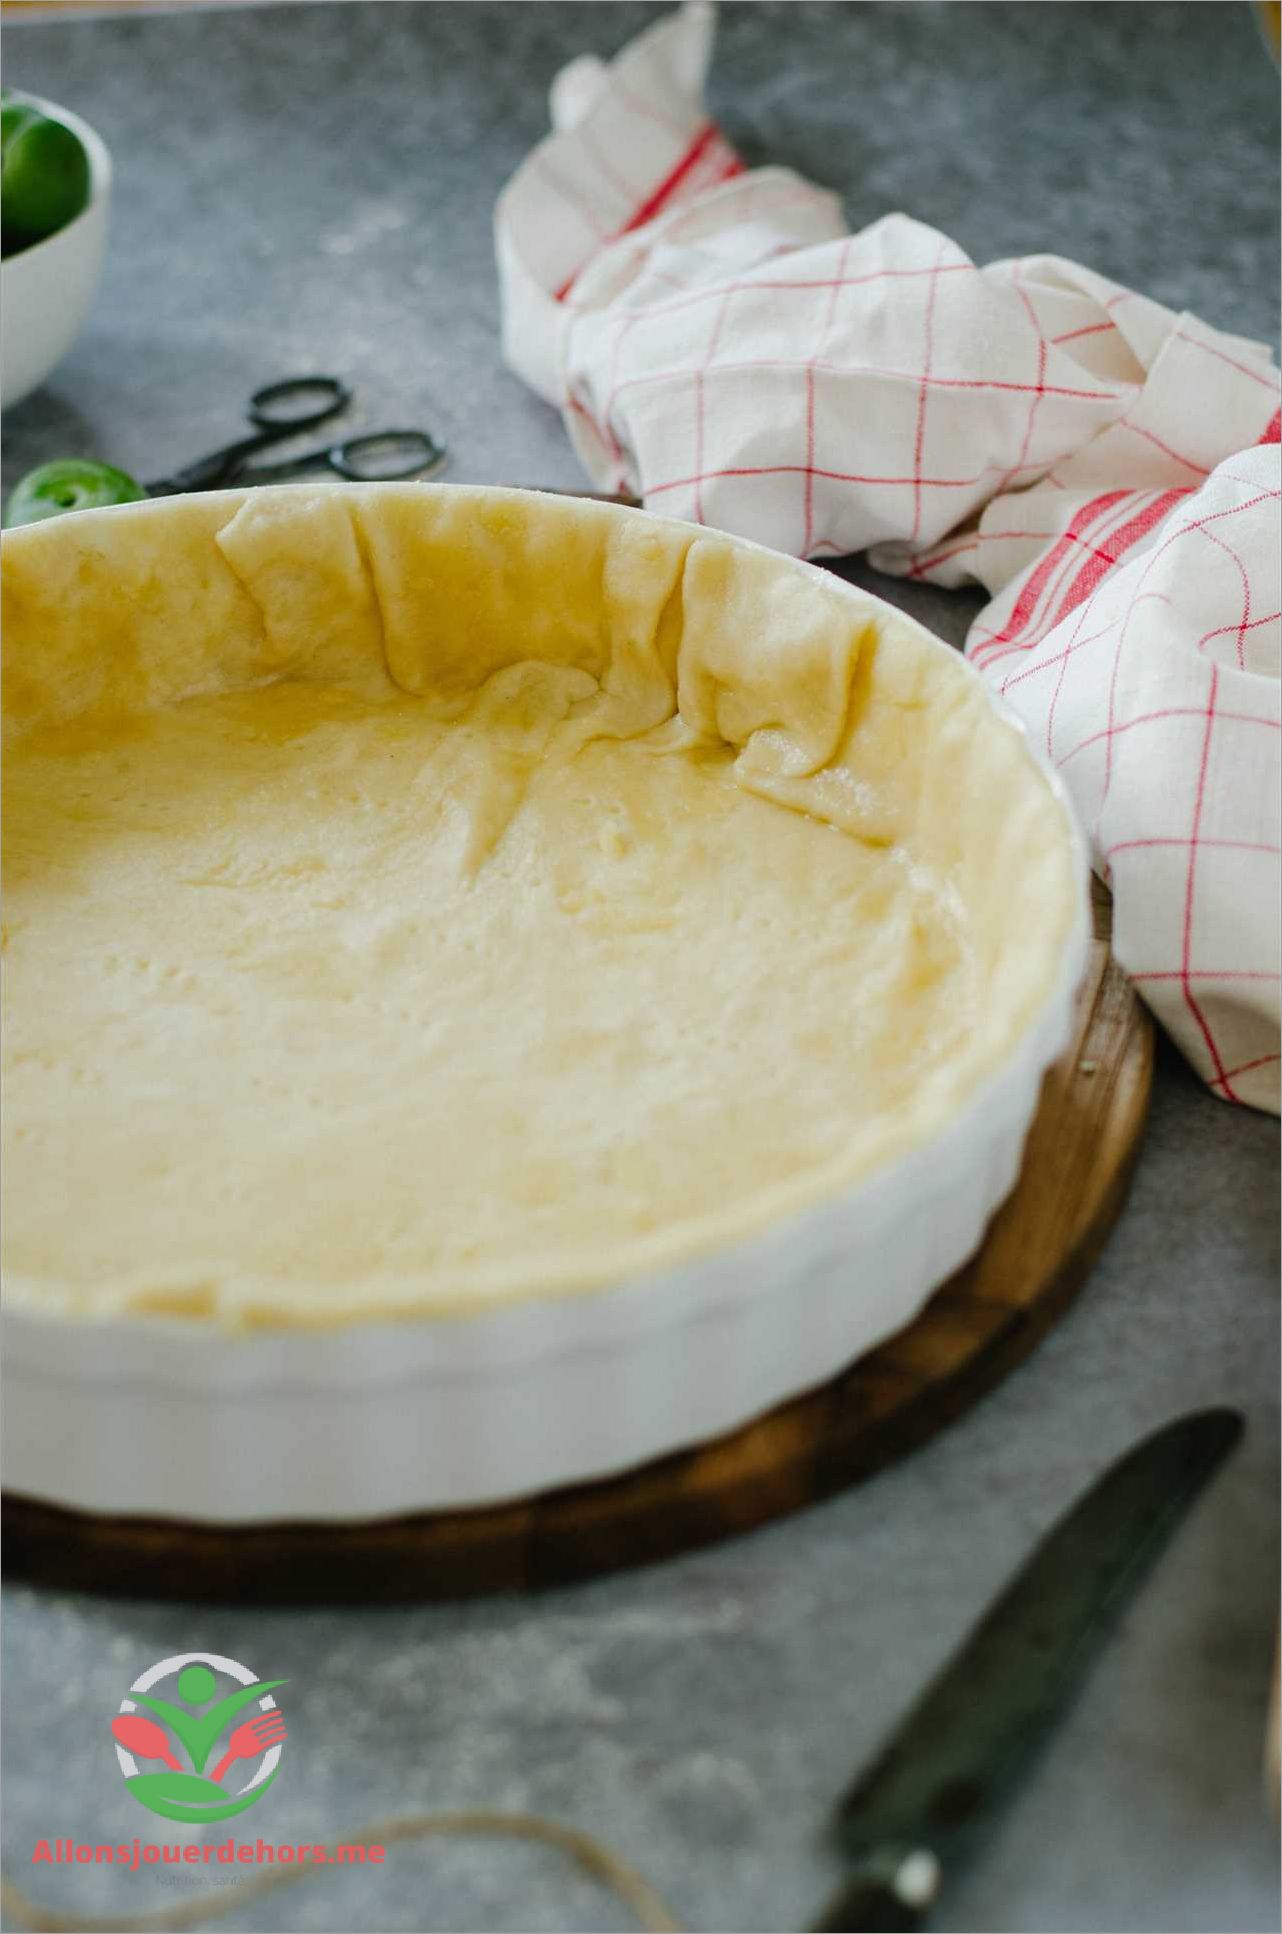 Comment préparer la pâte brisée sans beurre?